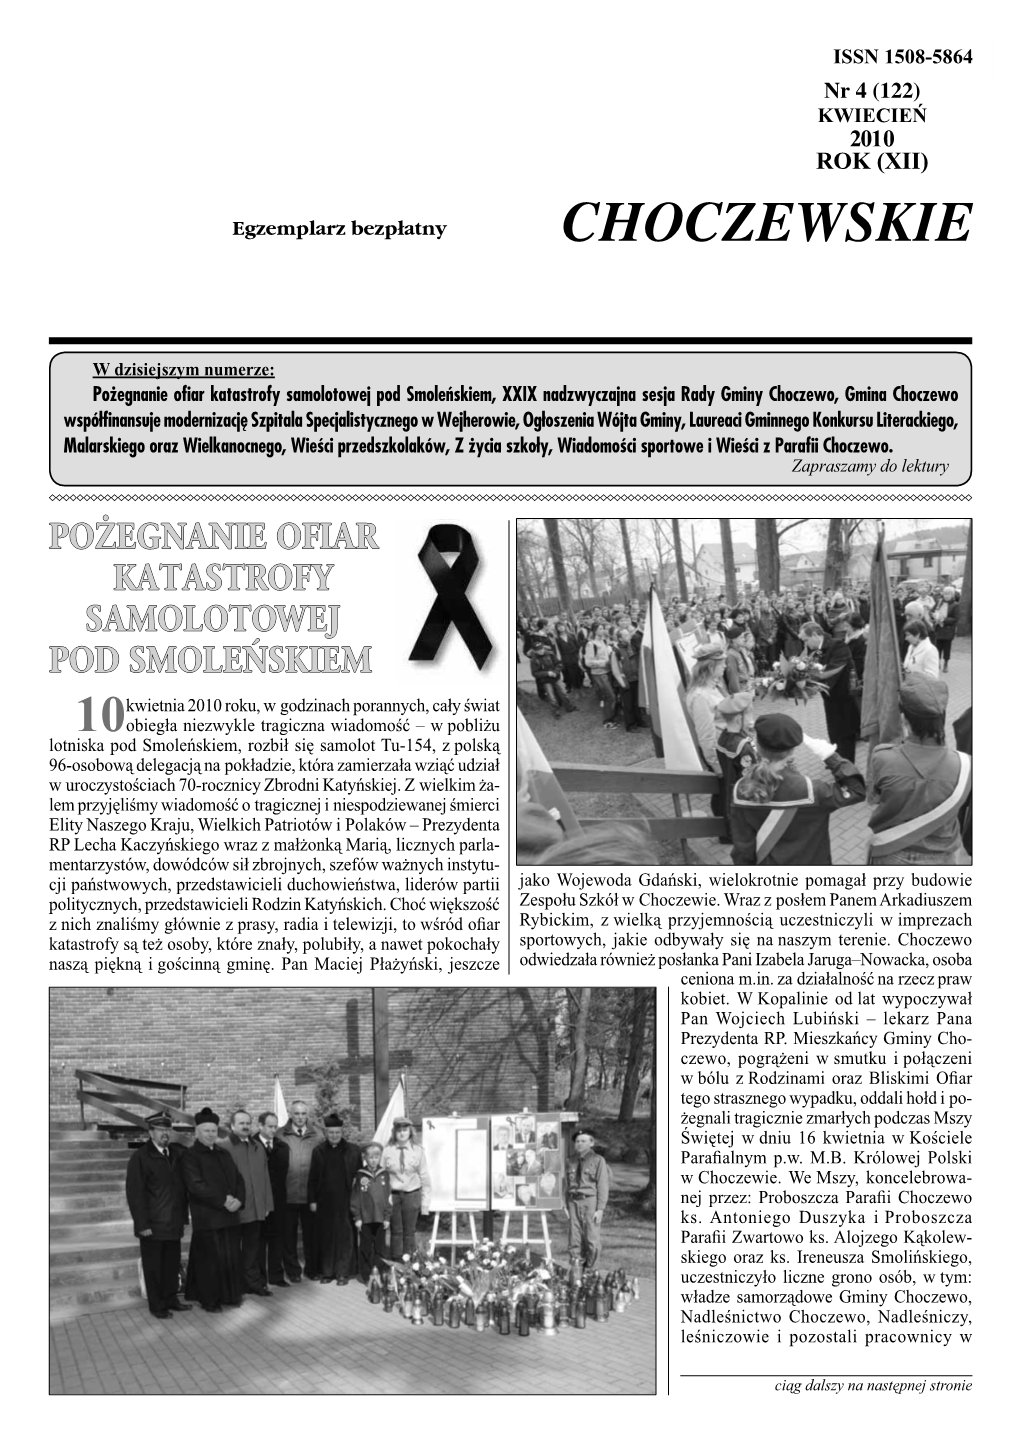 Wieści Choczewskie Nr 4 (122) KWIECIEŃ 2010 ISSN 1508-5864S